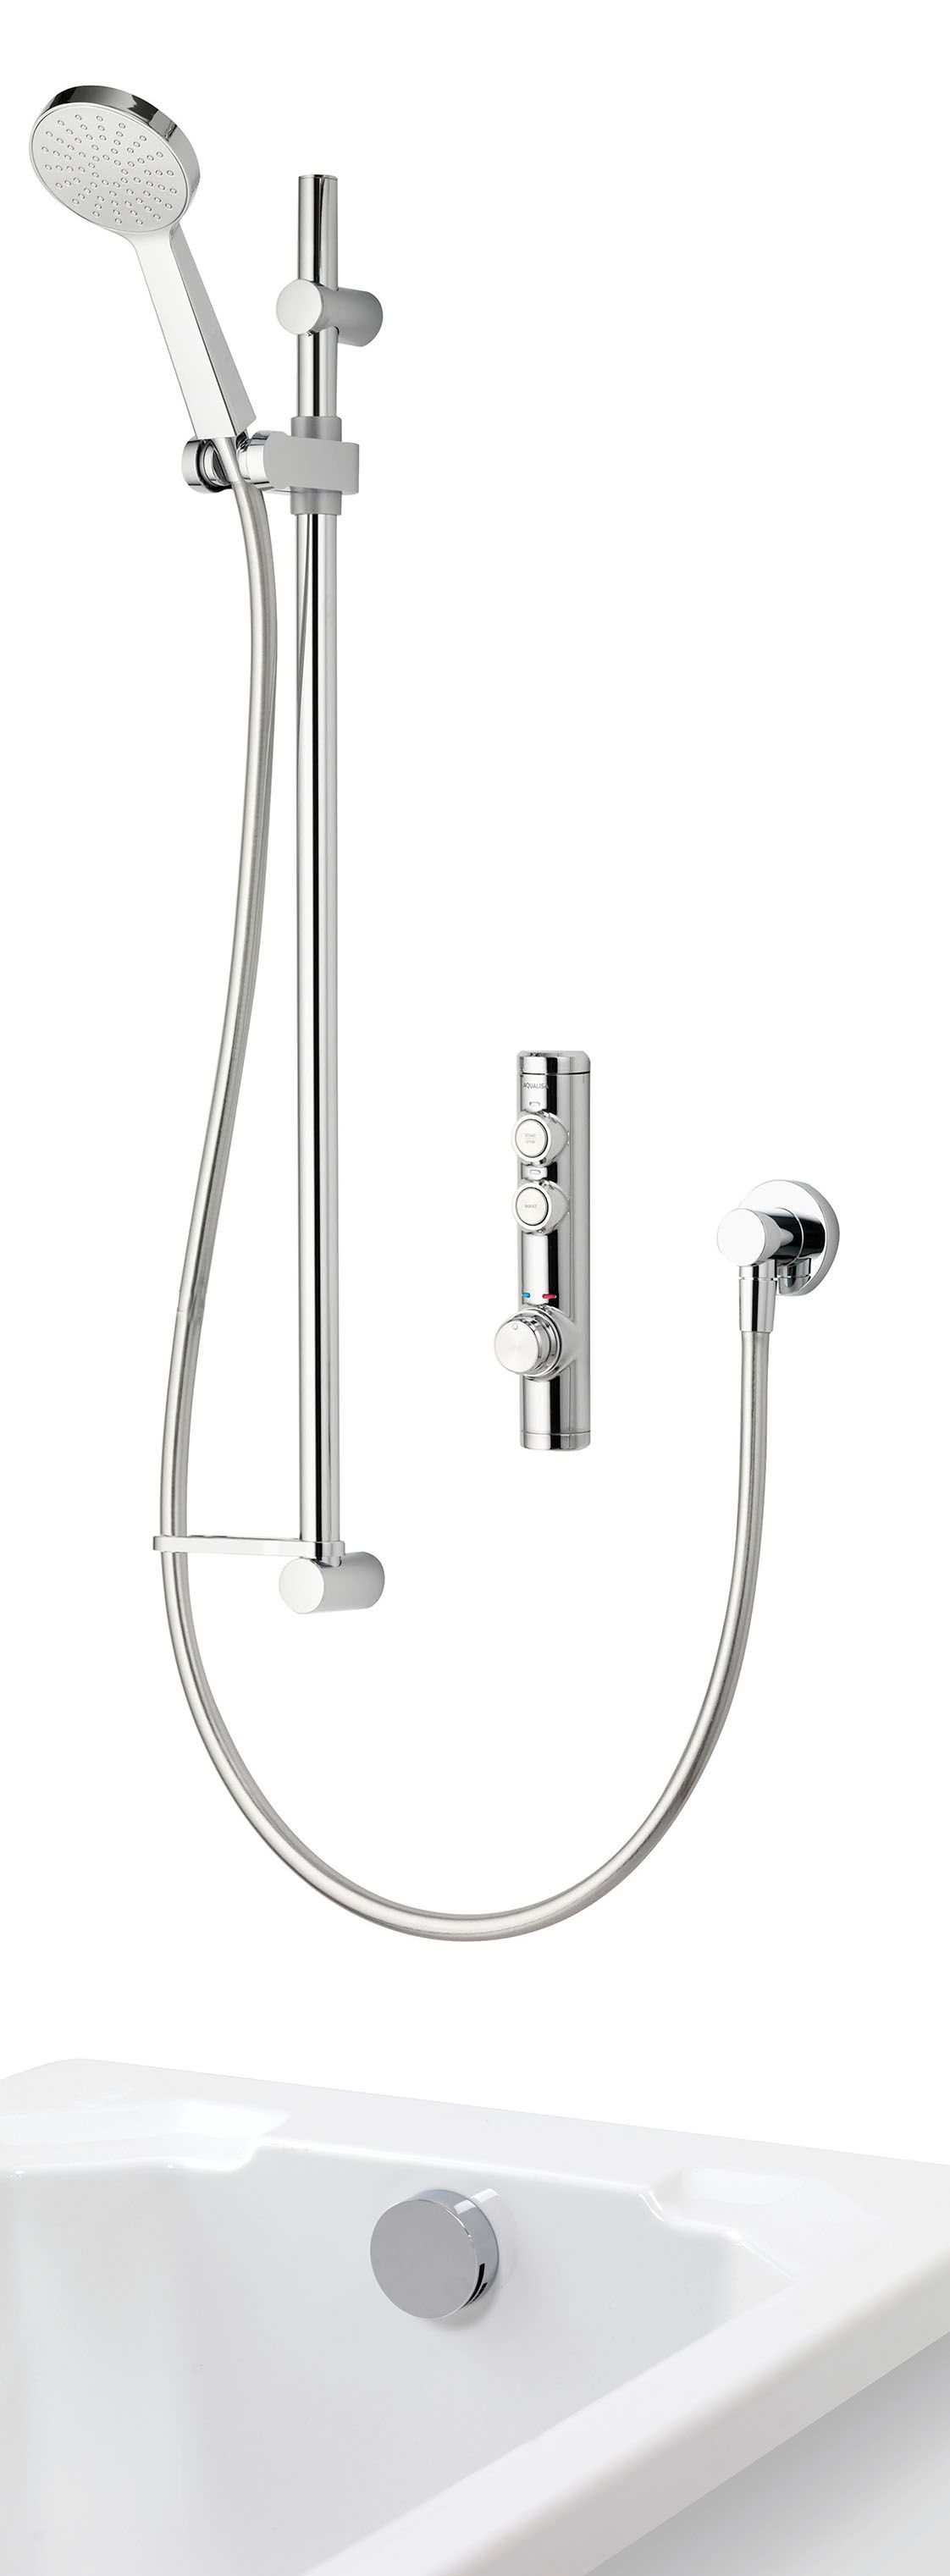 Aqualisa iSystem High Pressure Dual Outlet Concealed Digital Shower with Adjustable Bath Filler - Combi